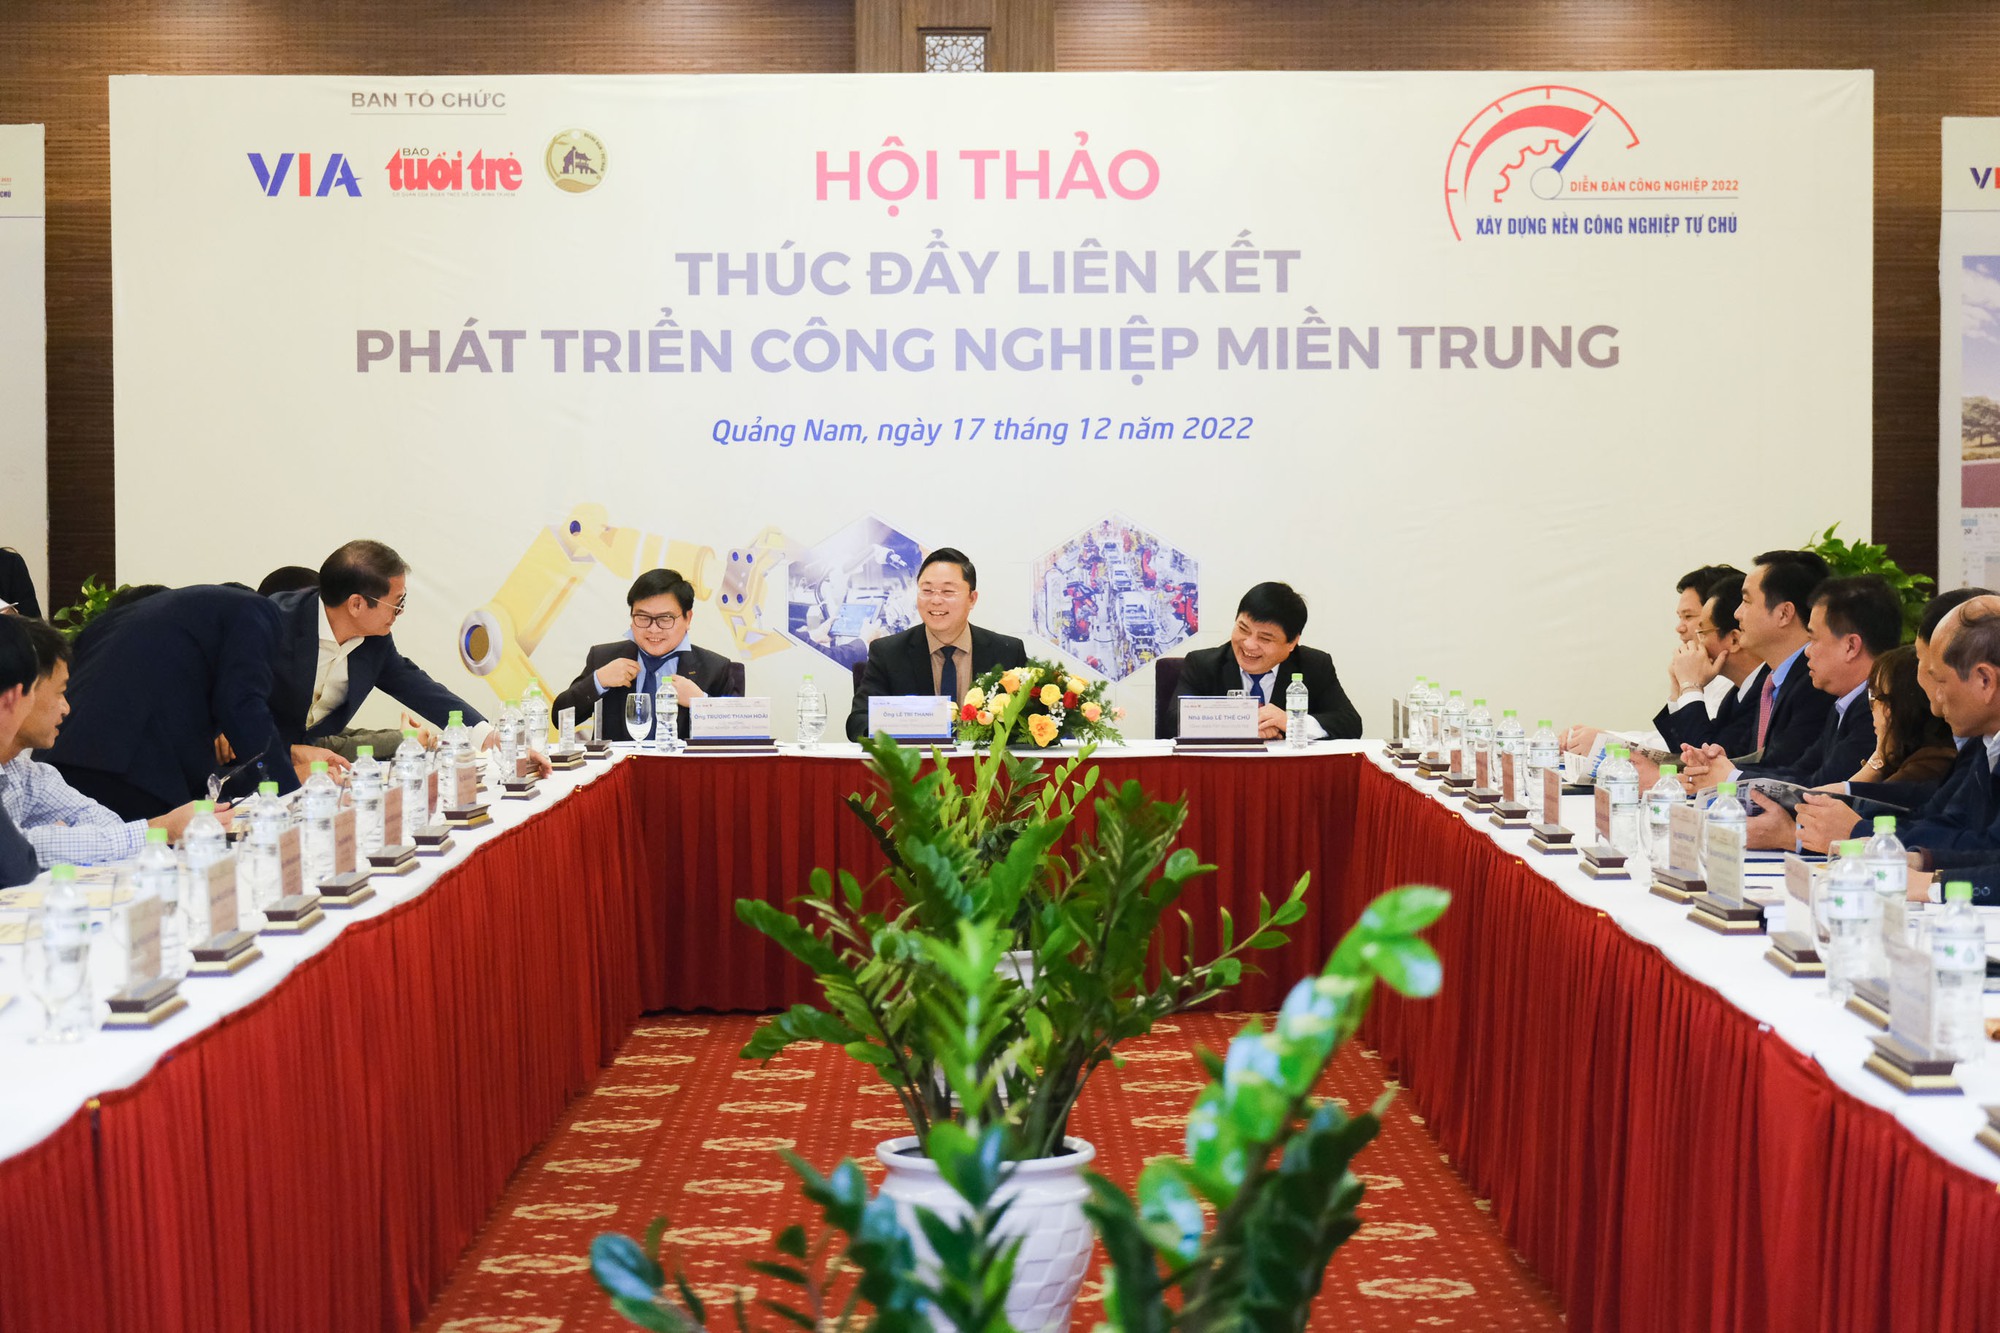 Hãy cùng chiêm ngưỡng những hình ảnh về tỉ phú Trần Bá Dương và cam kết của ông về sự phát triển của công nghiệp tại miền Trung. Bức ảnh sẽ giúp bạn hiểu rõ hơn về tầm nhìn và sức mạnh của doanh nhân Việt.